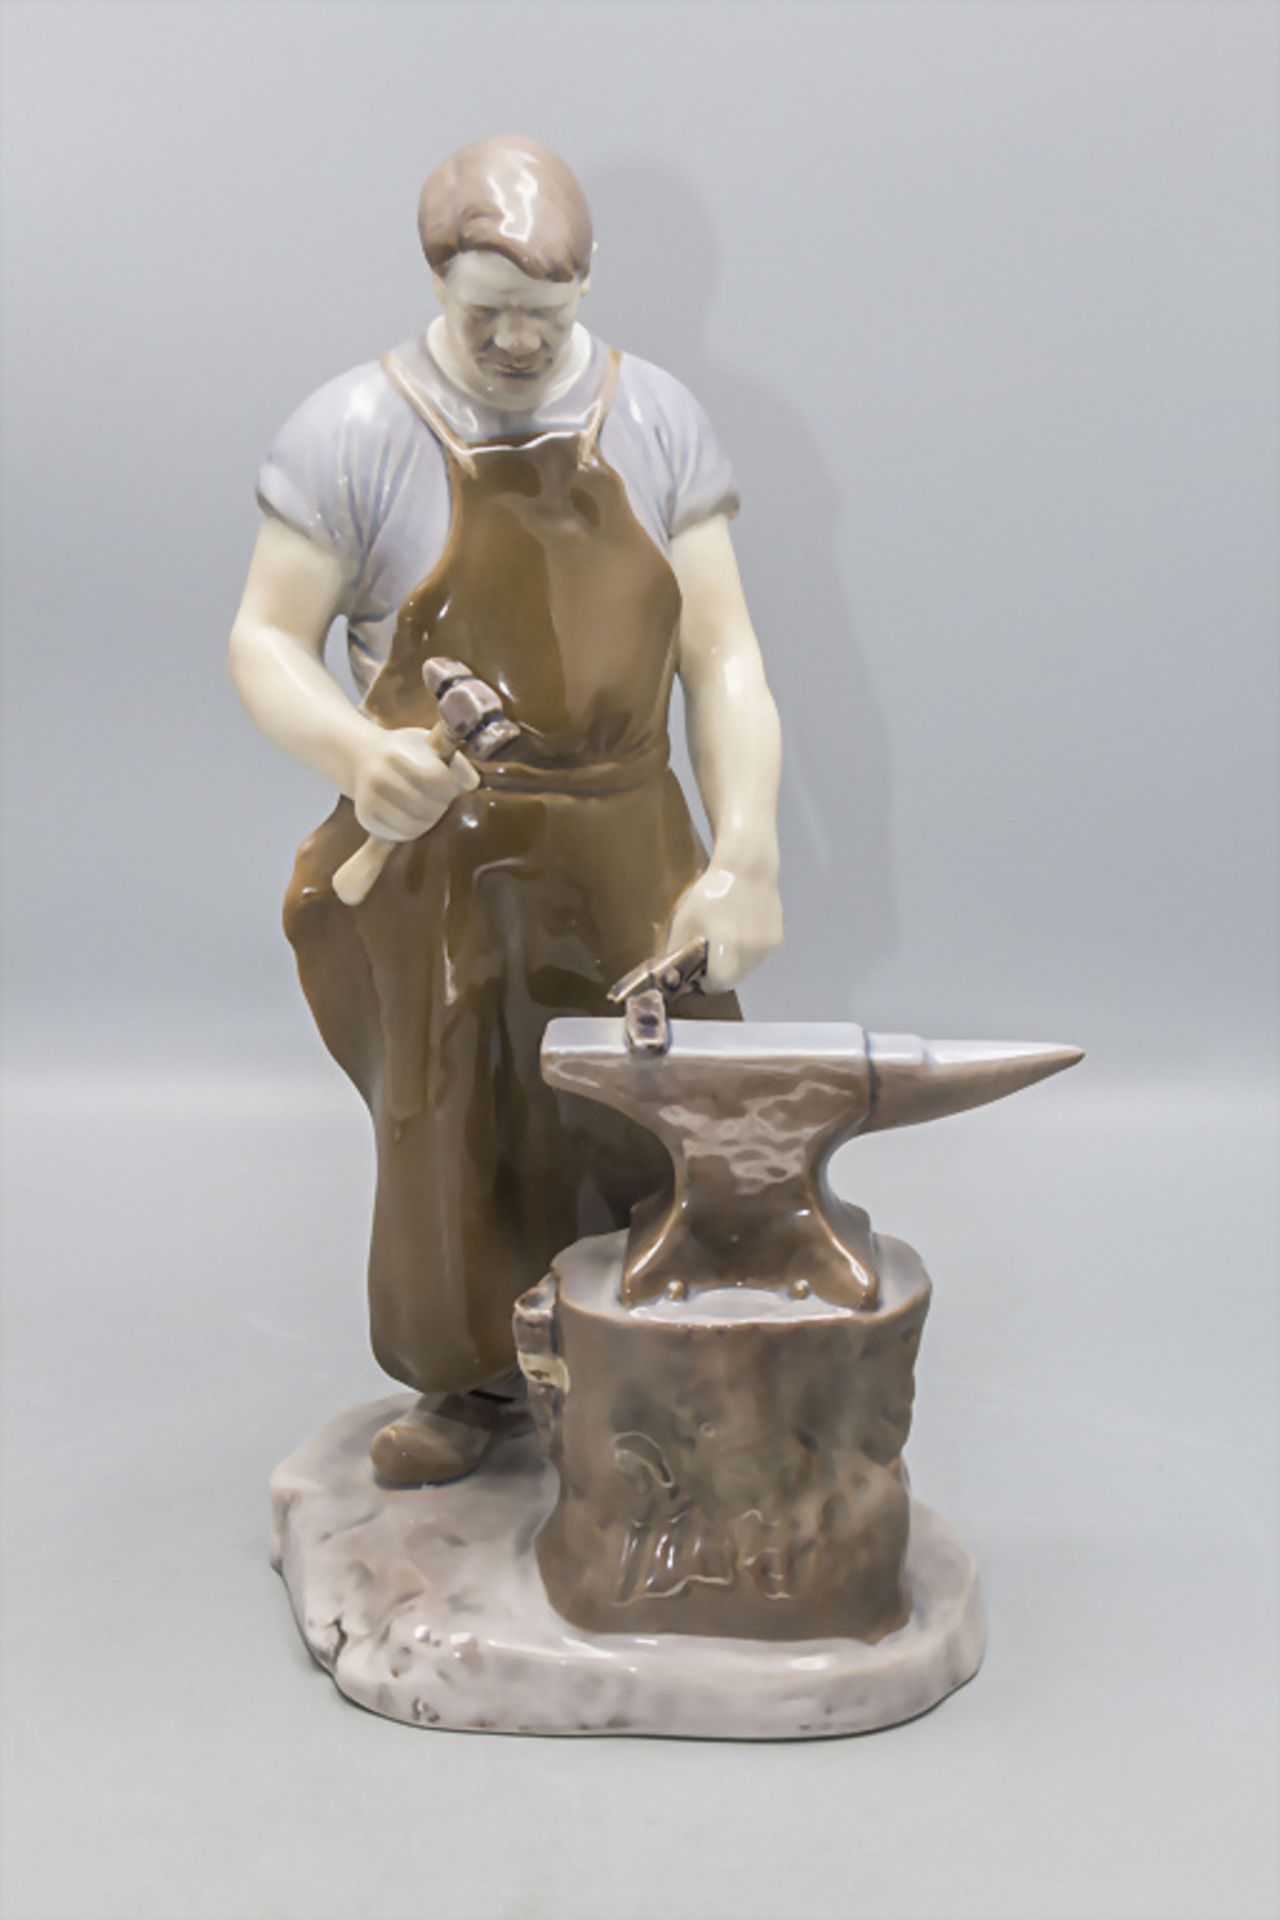 Porzellanfigur 'Schmied' / A porcelain figure of a blacksmith, Bing & Gröndahl, Copenhagen